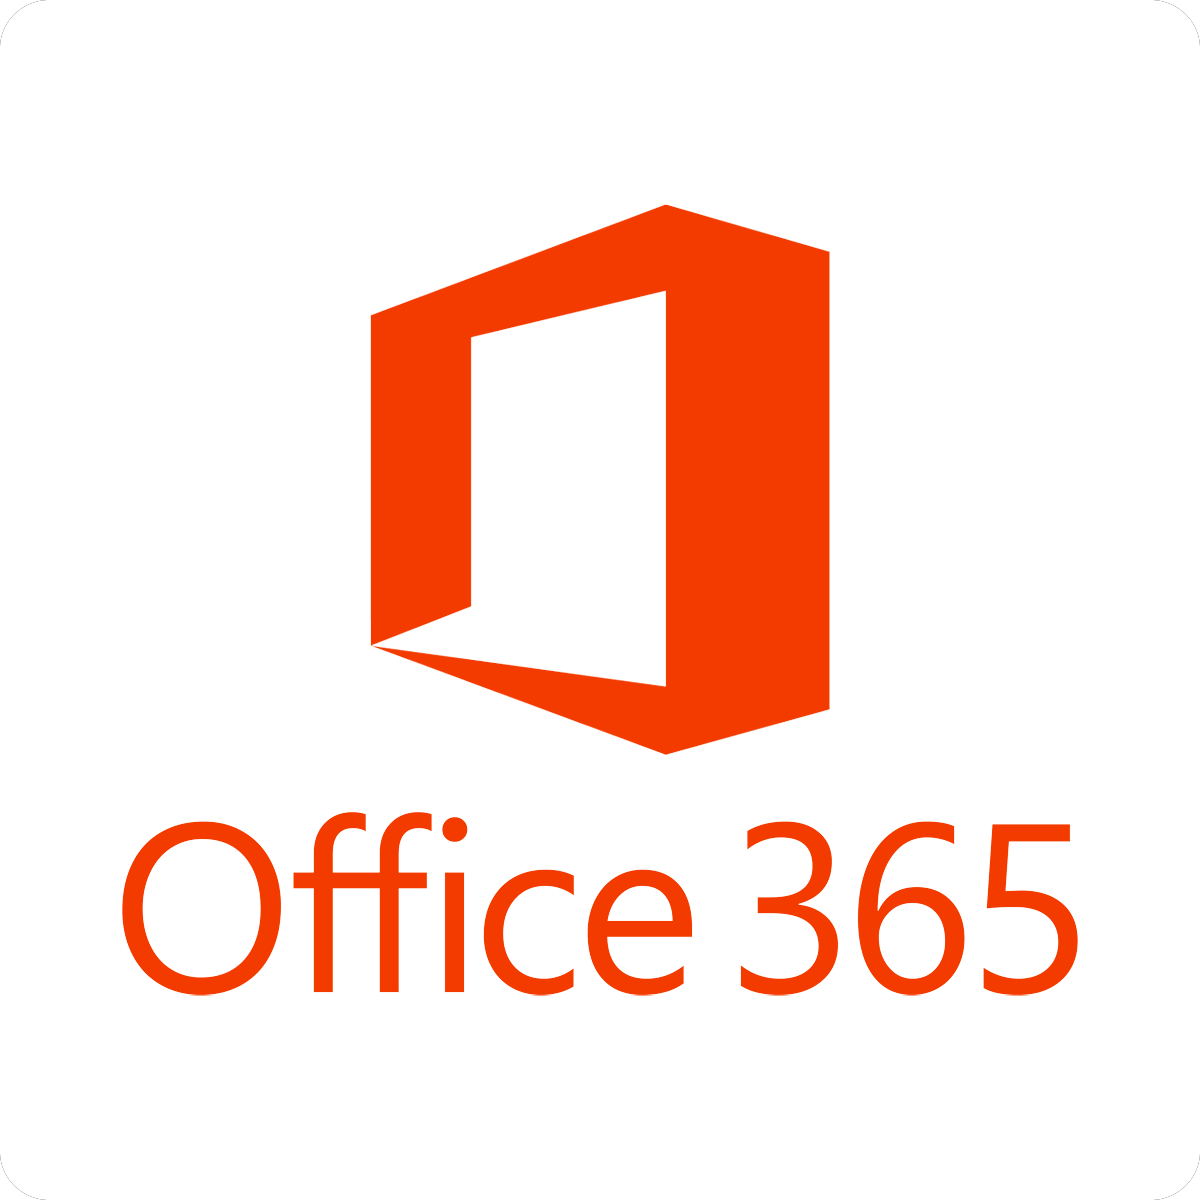 Office 365 - Excelis pole piisavalt kettaruumi